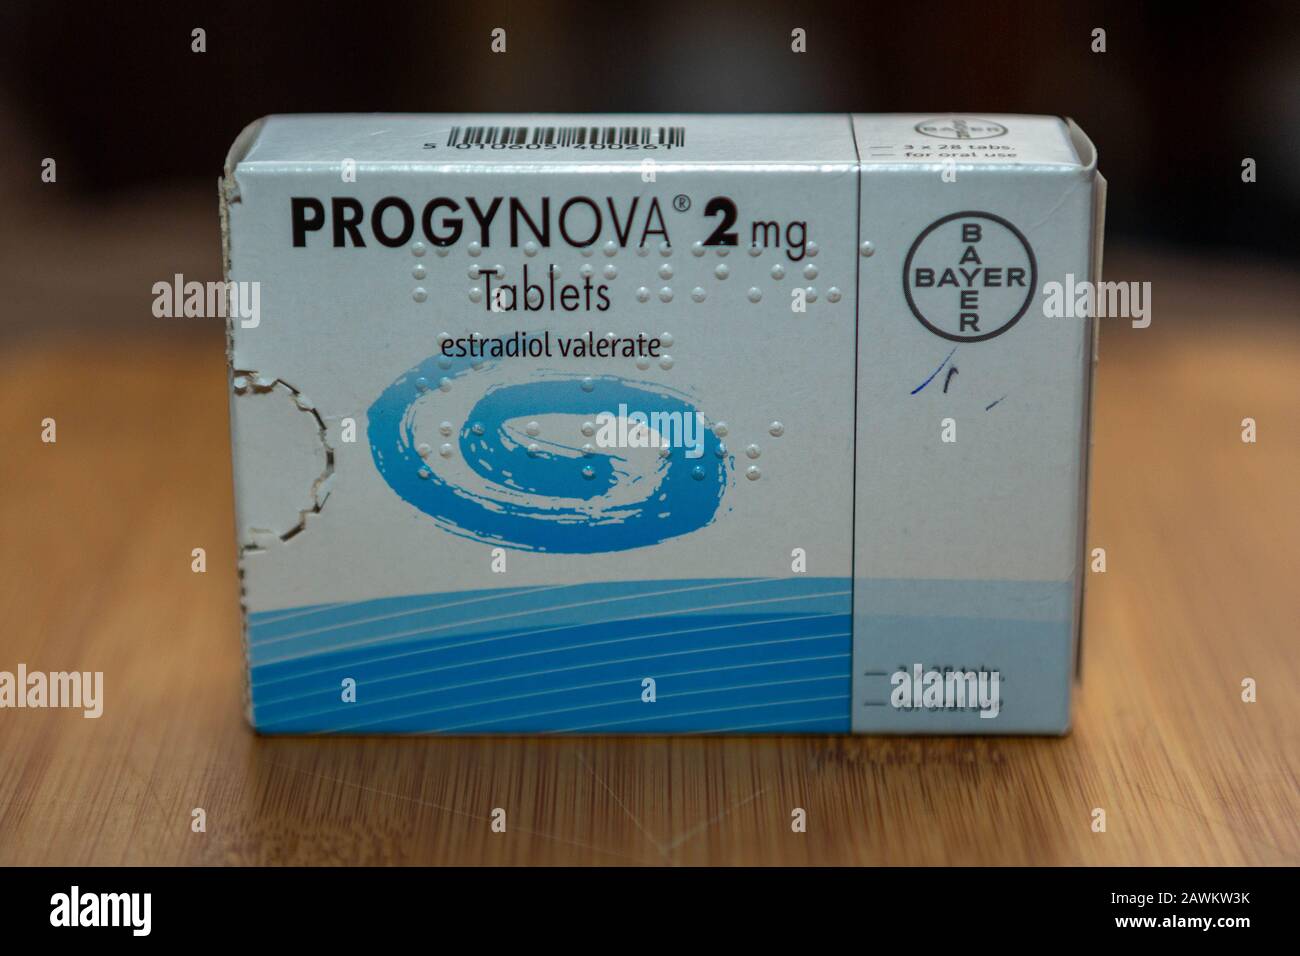 Progynova 2 mg Tabletten Estradiol Valerat Stockfotografie - Alamy